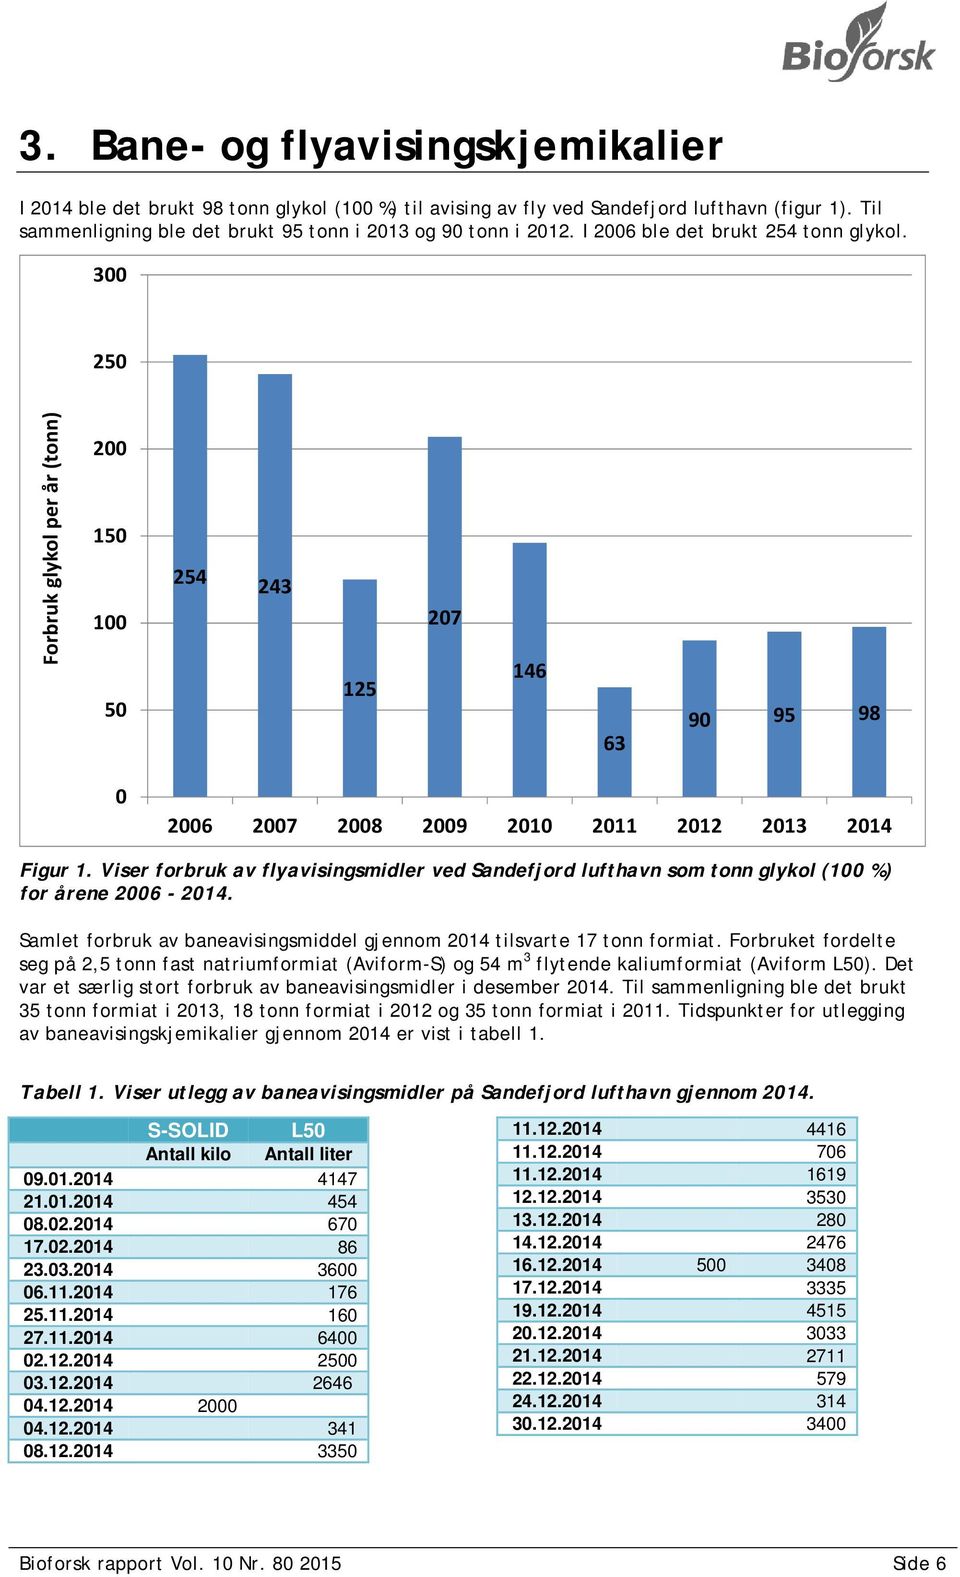 Viser forbruk av flyavisingsmidler ved Sandefjord lufthavn som tonn glykol (100 %) for årene 2006-2014. Samlet forbruk av baneavisingsmiddel gjennom 2014 tilsvarte 17 tonn formiat.